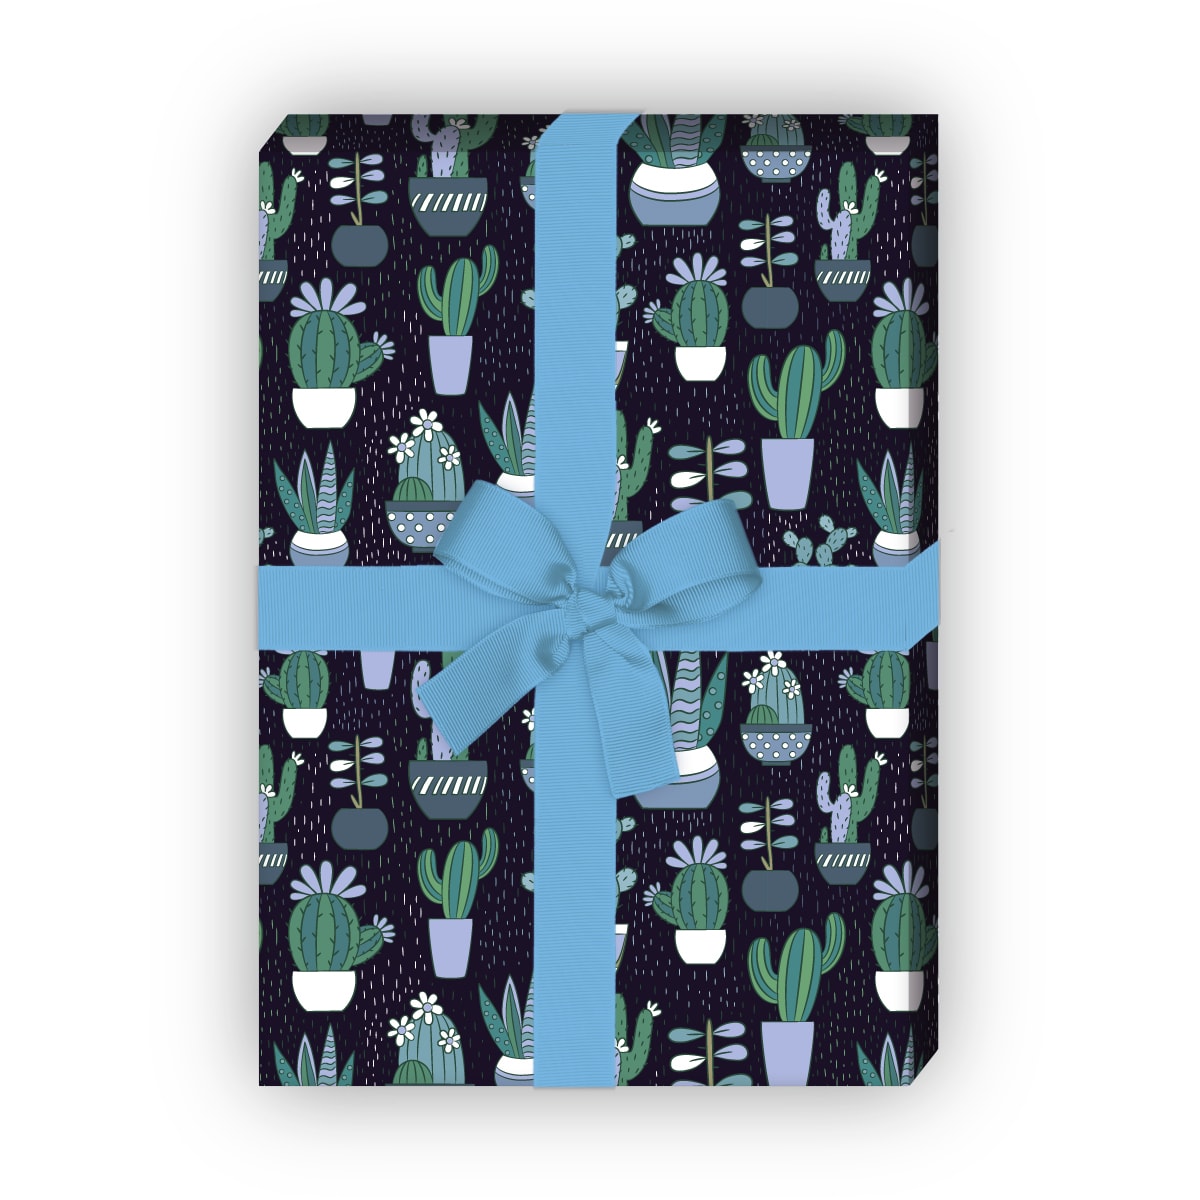 Kartenkaufrausch: Nettes Kaktus Geschenkpapier mit aus unserer Geburtstags Papeterie in blau